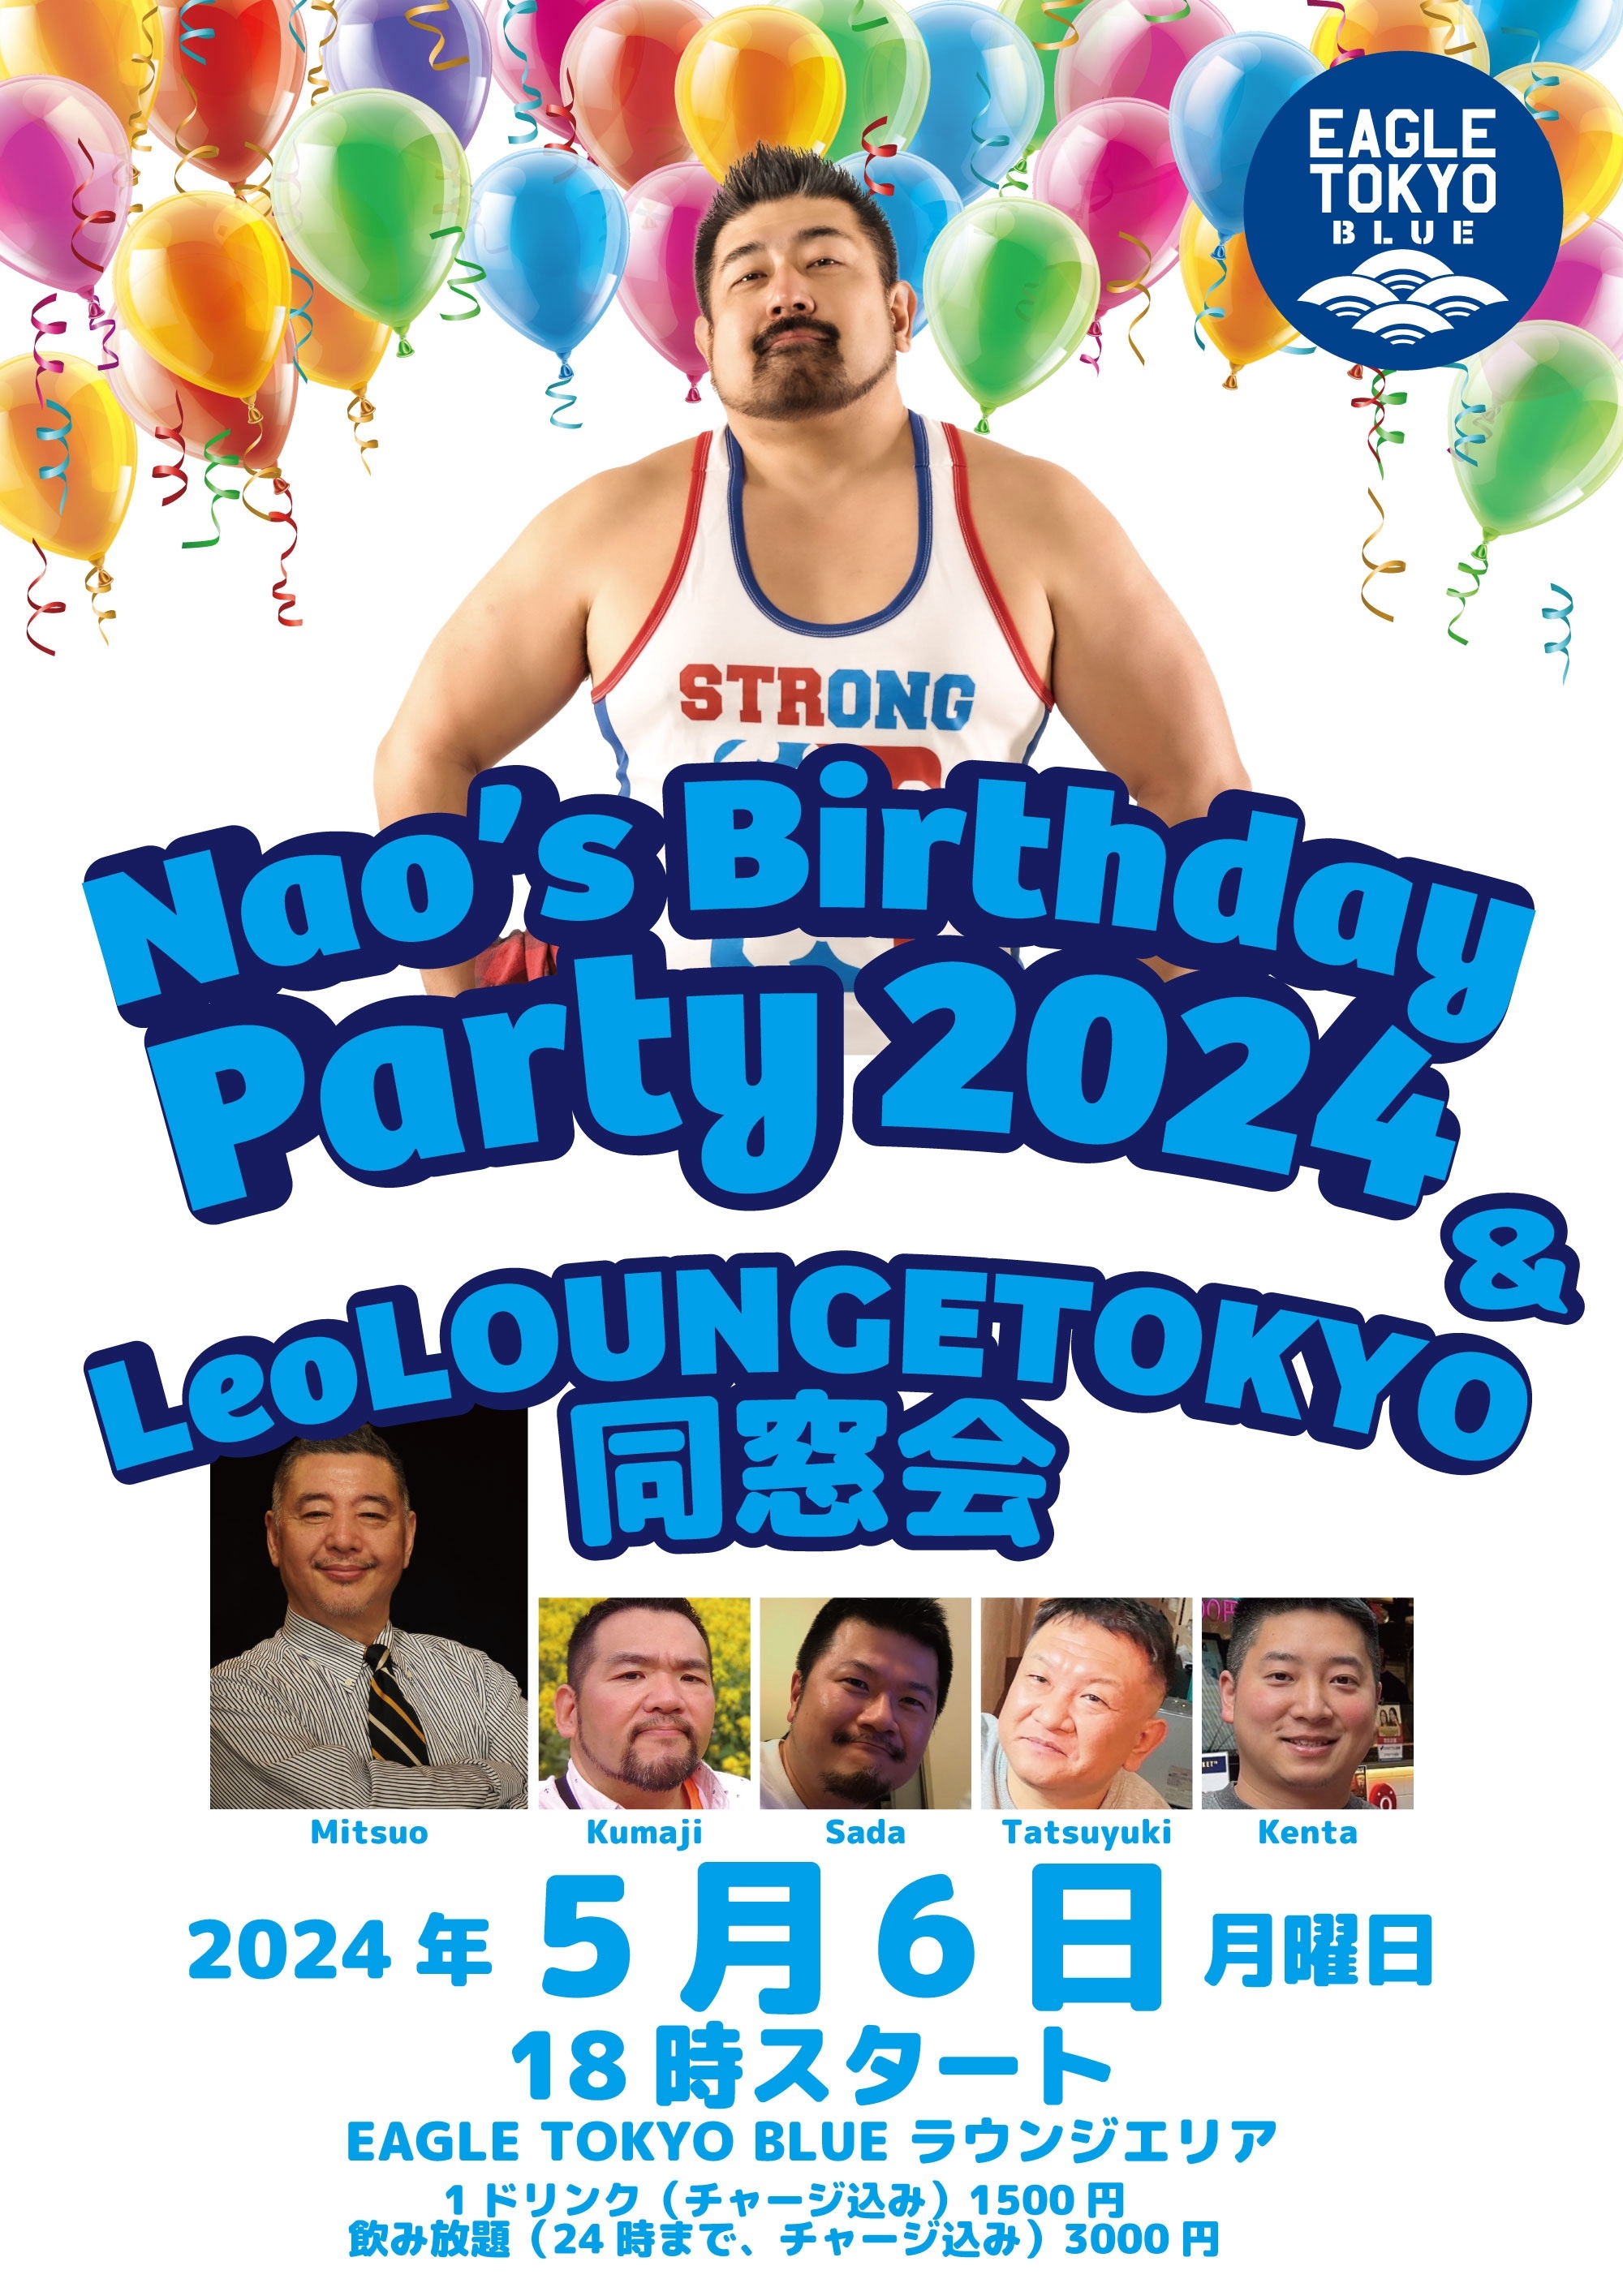 Nao's Birthday party 2024 & LEOLOUNGETOKYO 同窓会